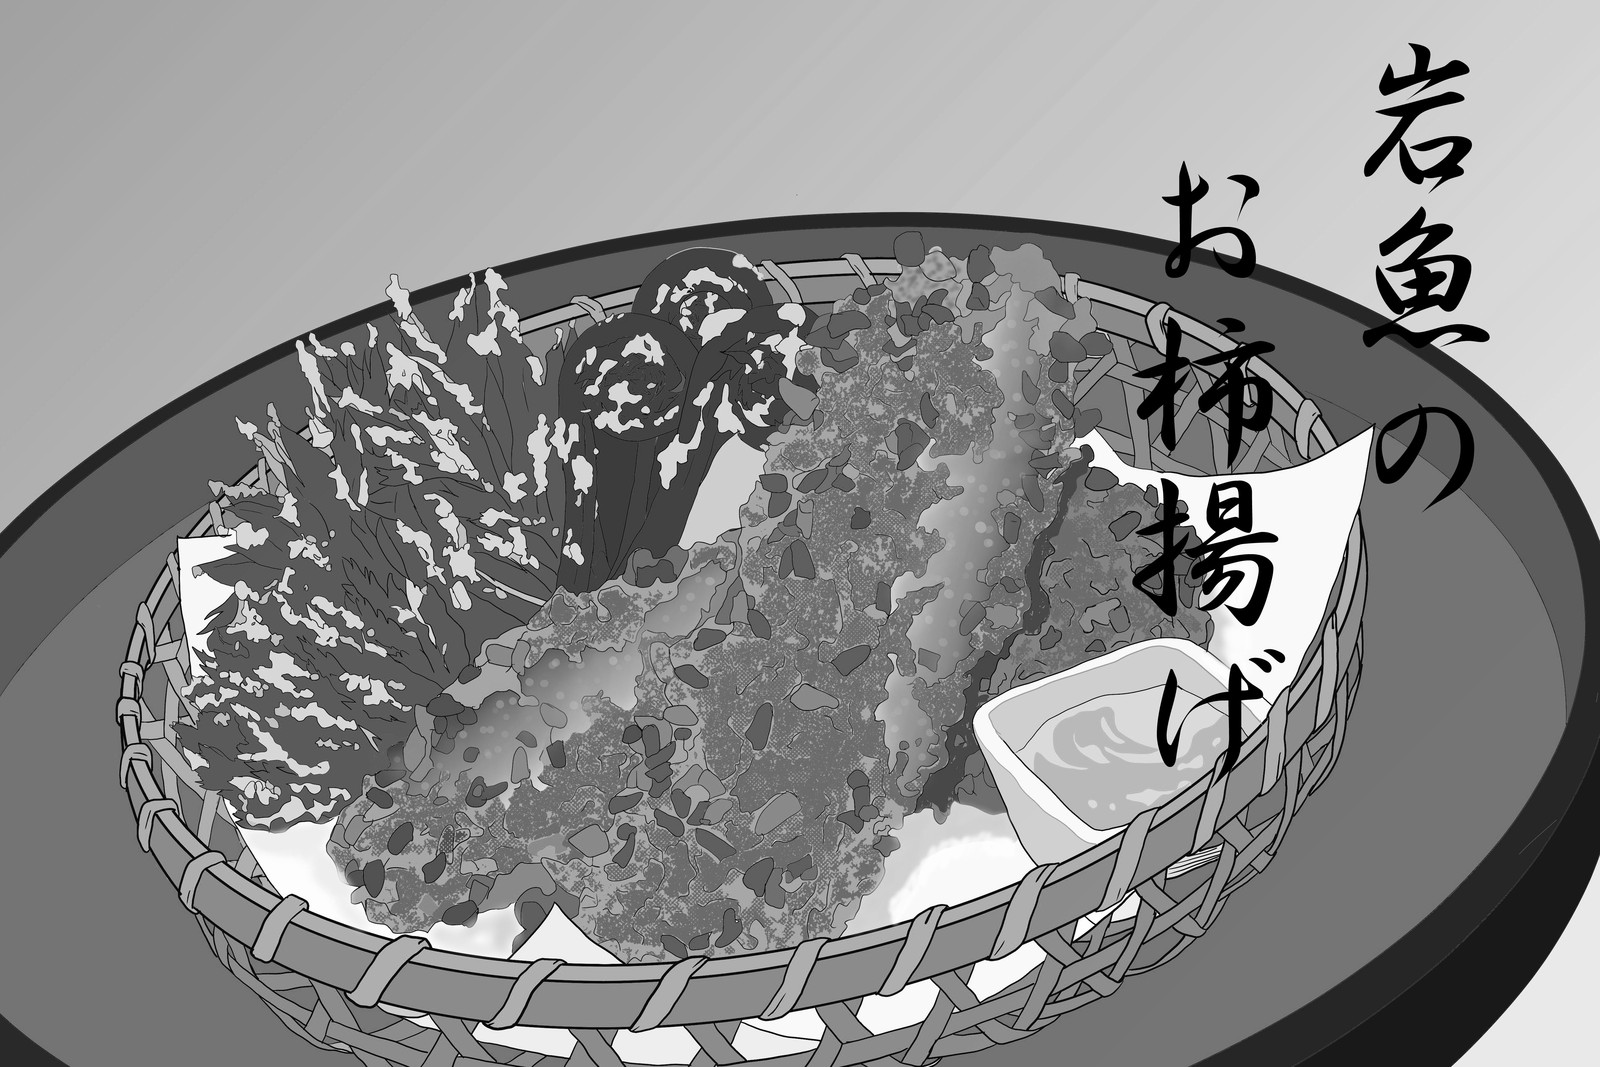 岩魚のお柿揚げ 食戟のソーマ全料理再現